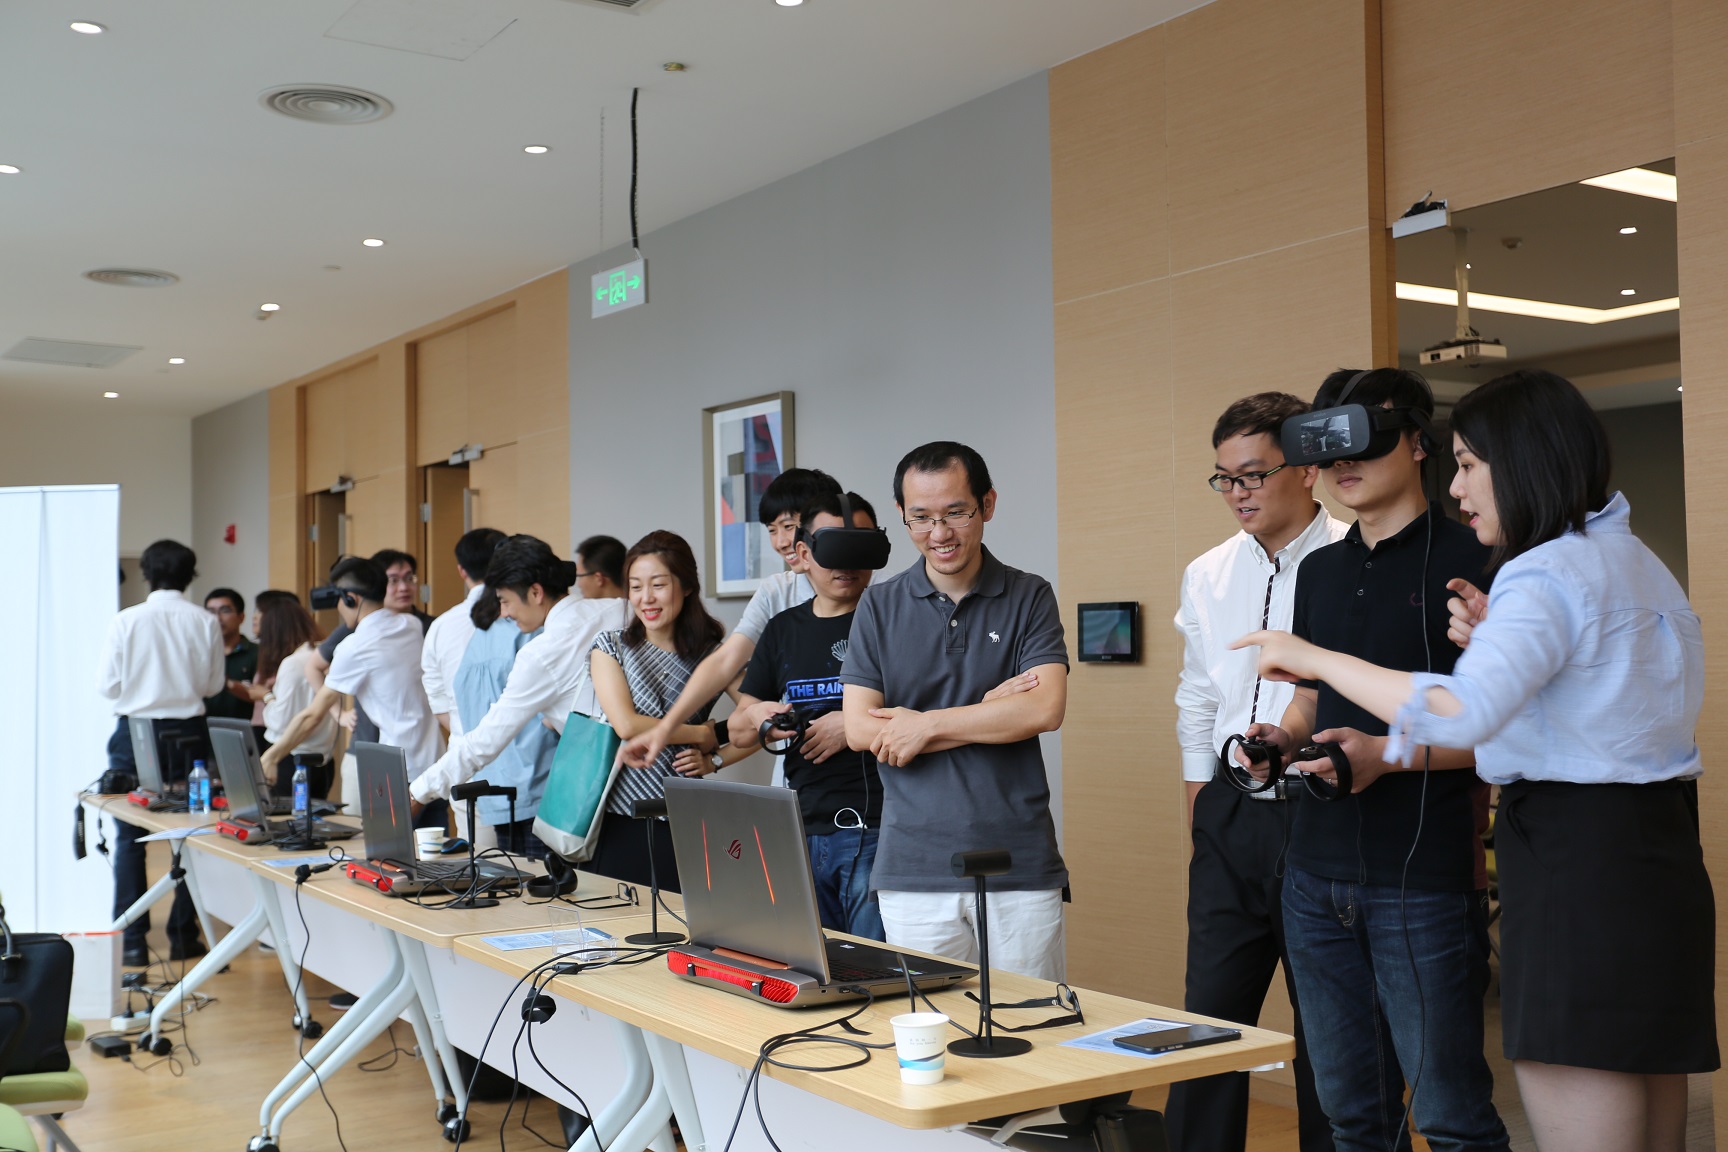 会议现场的VR互动体验区